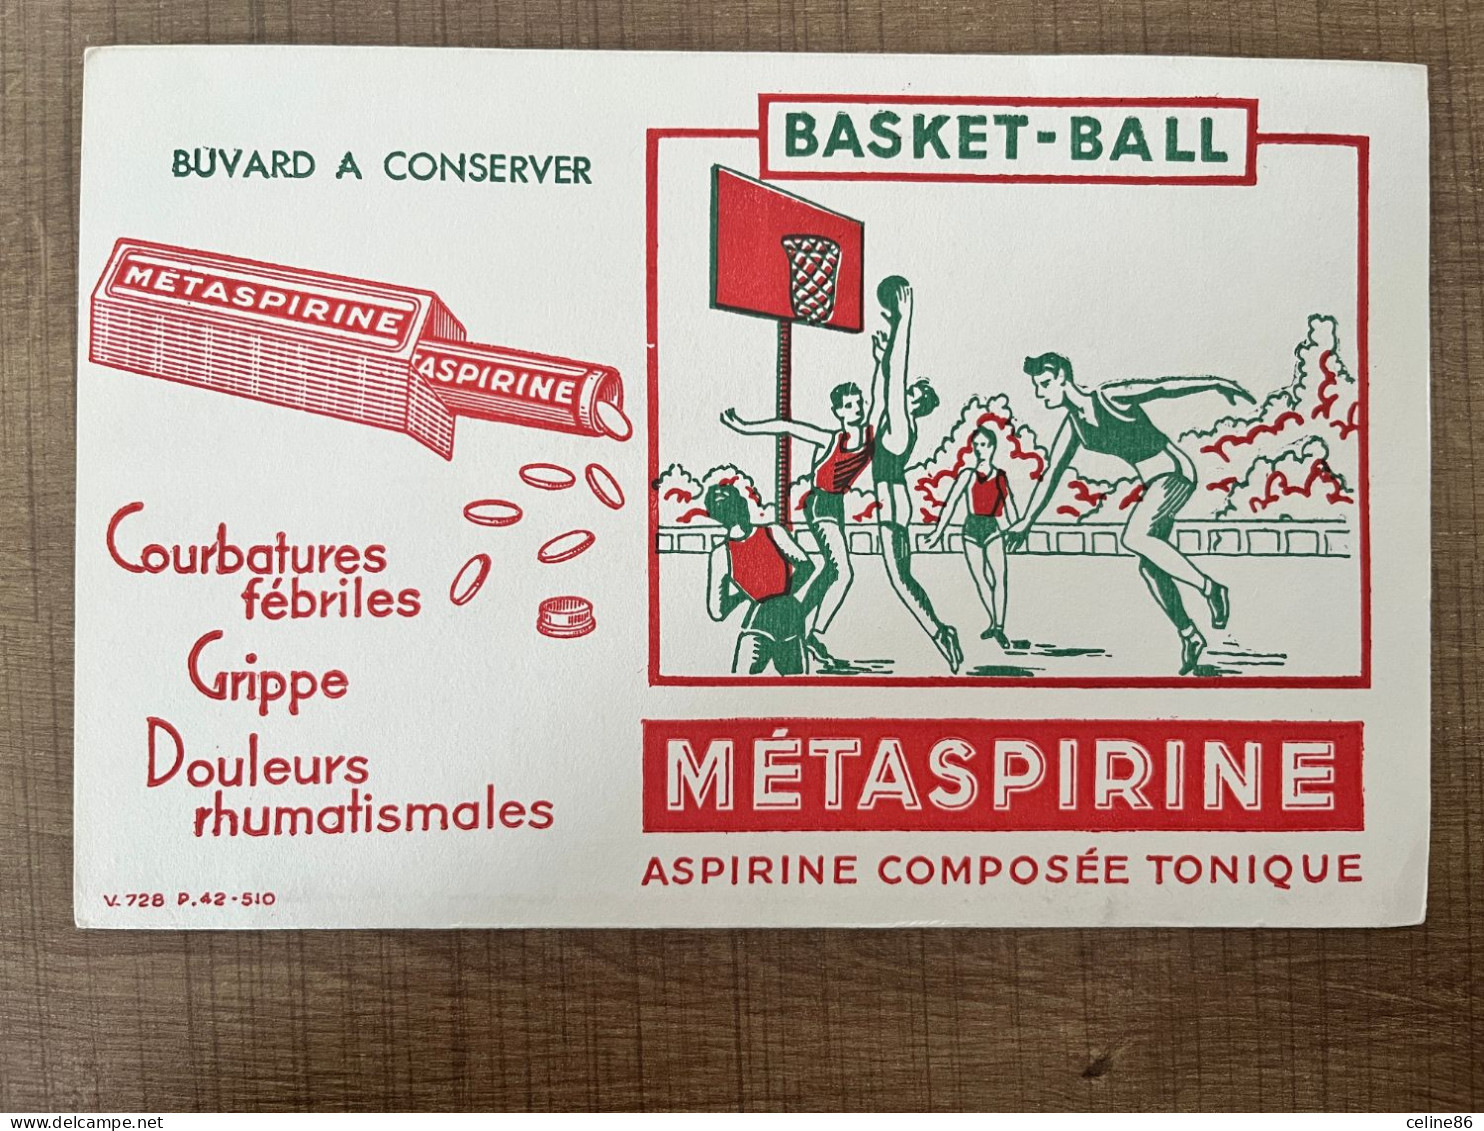 Basket Ball METASPIRINE Aspirine Composée Tonique - Chemist's